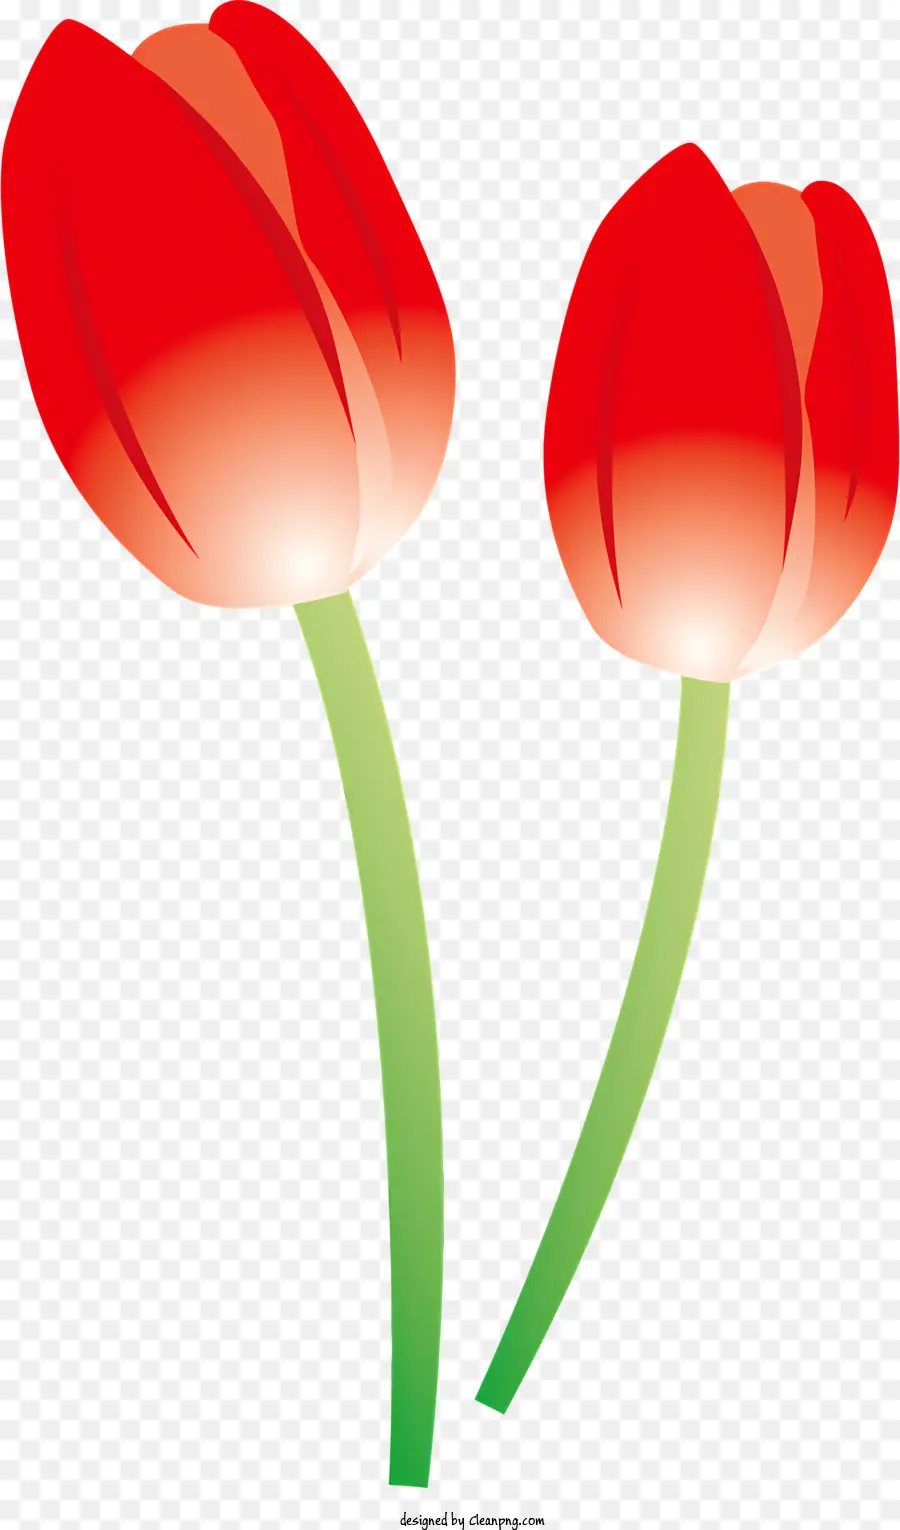 Biểu tượng hoa tulip màu đỏ lá xanh lá cây đơn lẻ sắp xếp đối xứng thân cây - Hai hoa tulip đỏ với lá xanh